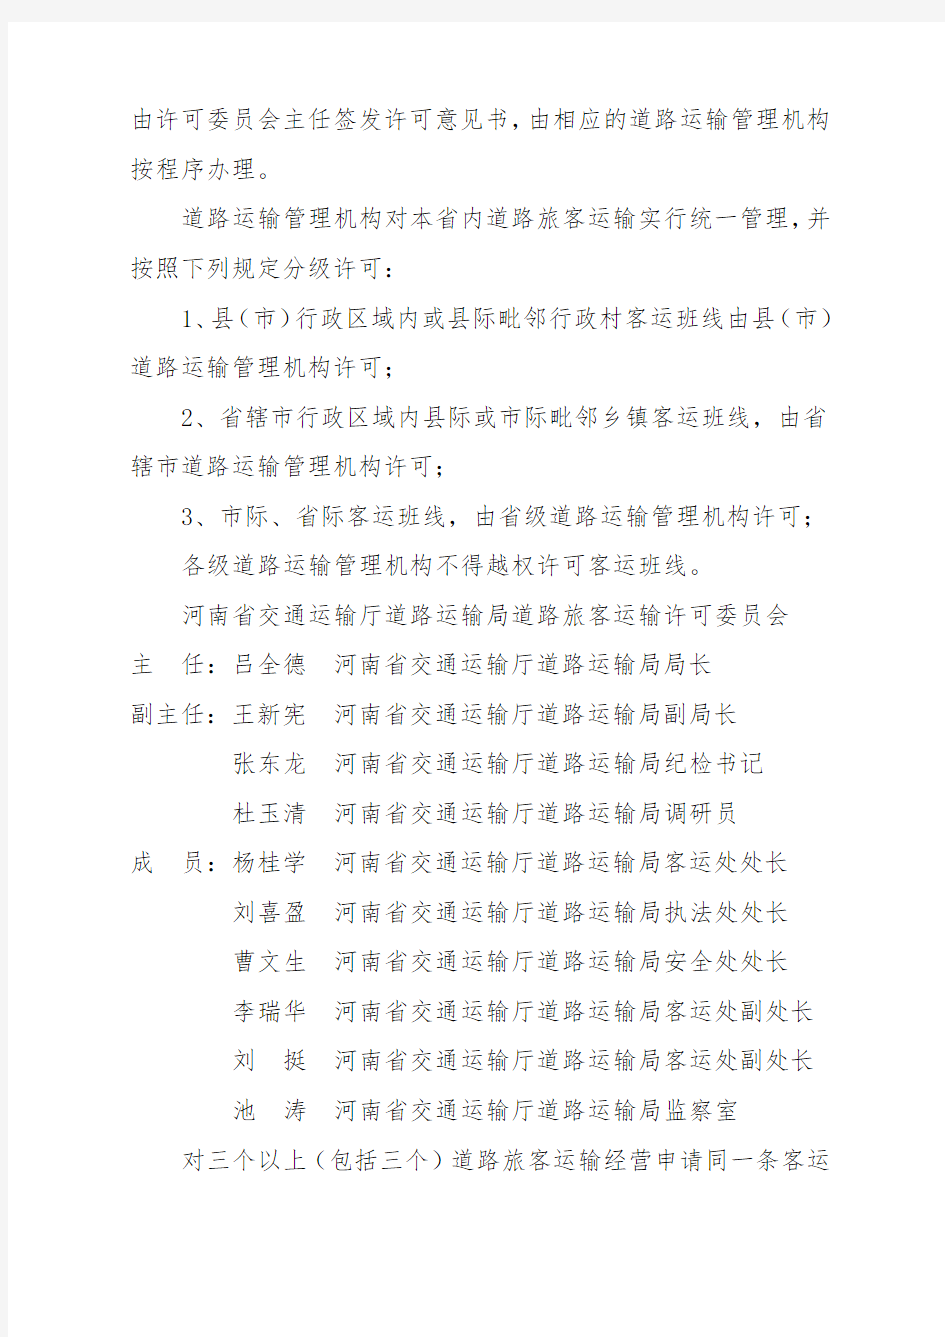 河南省道路旅客运输行政许可办法